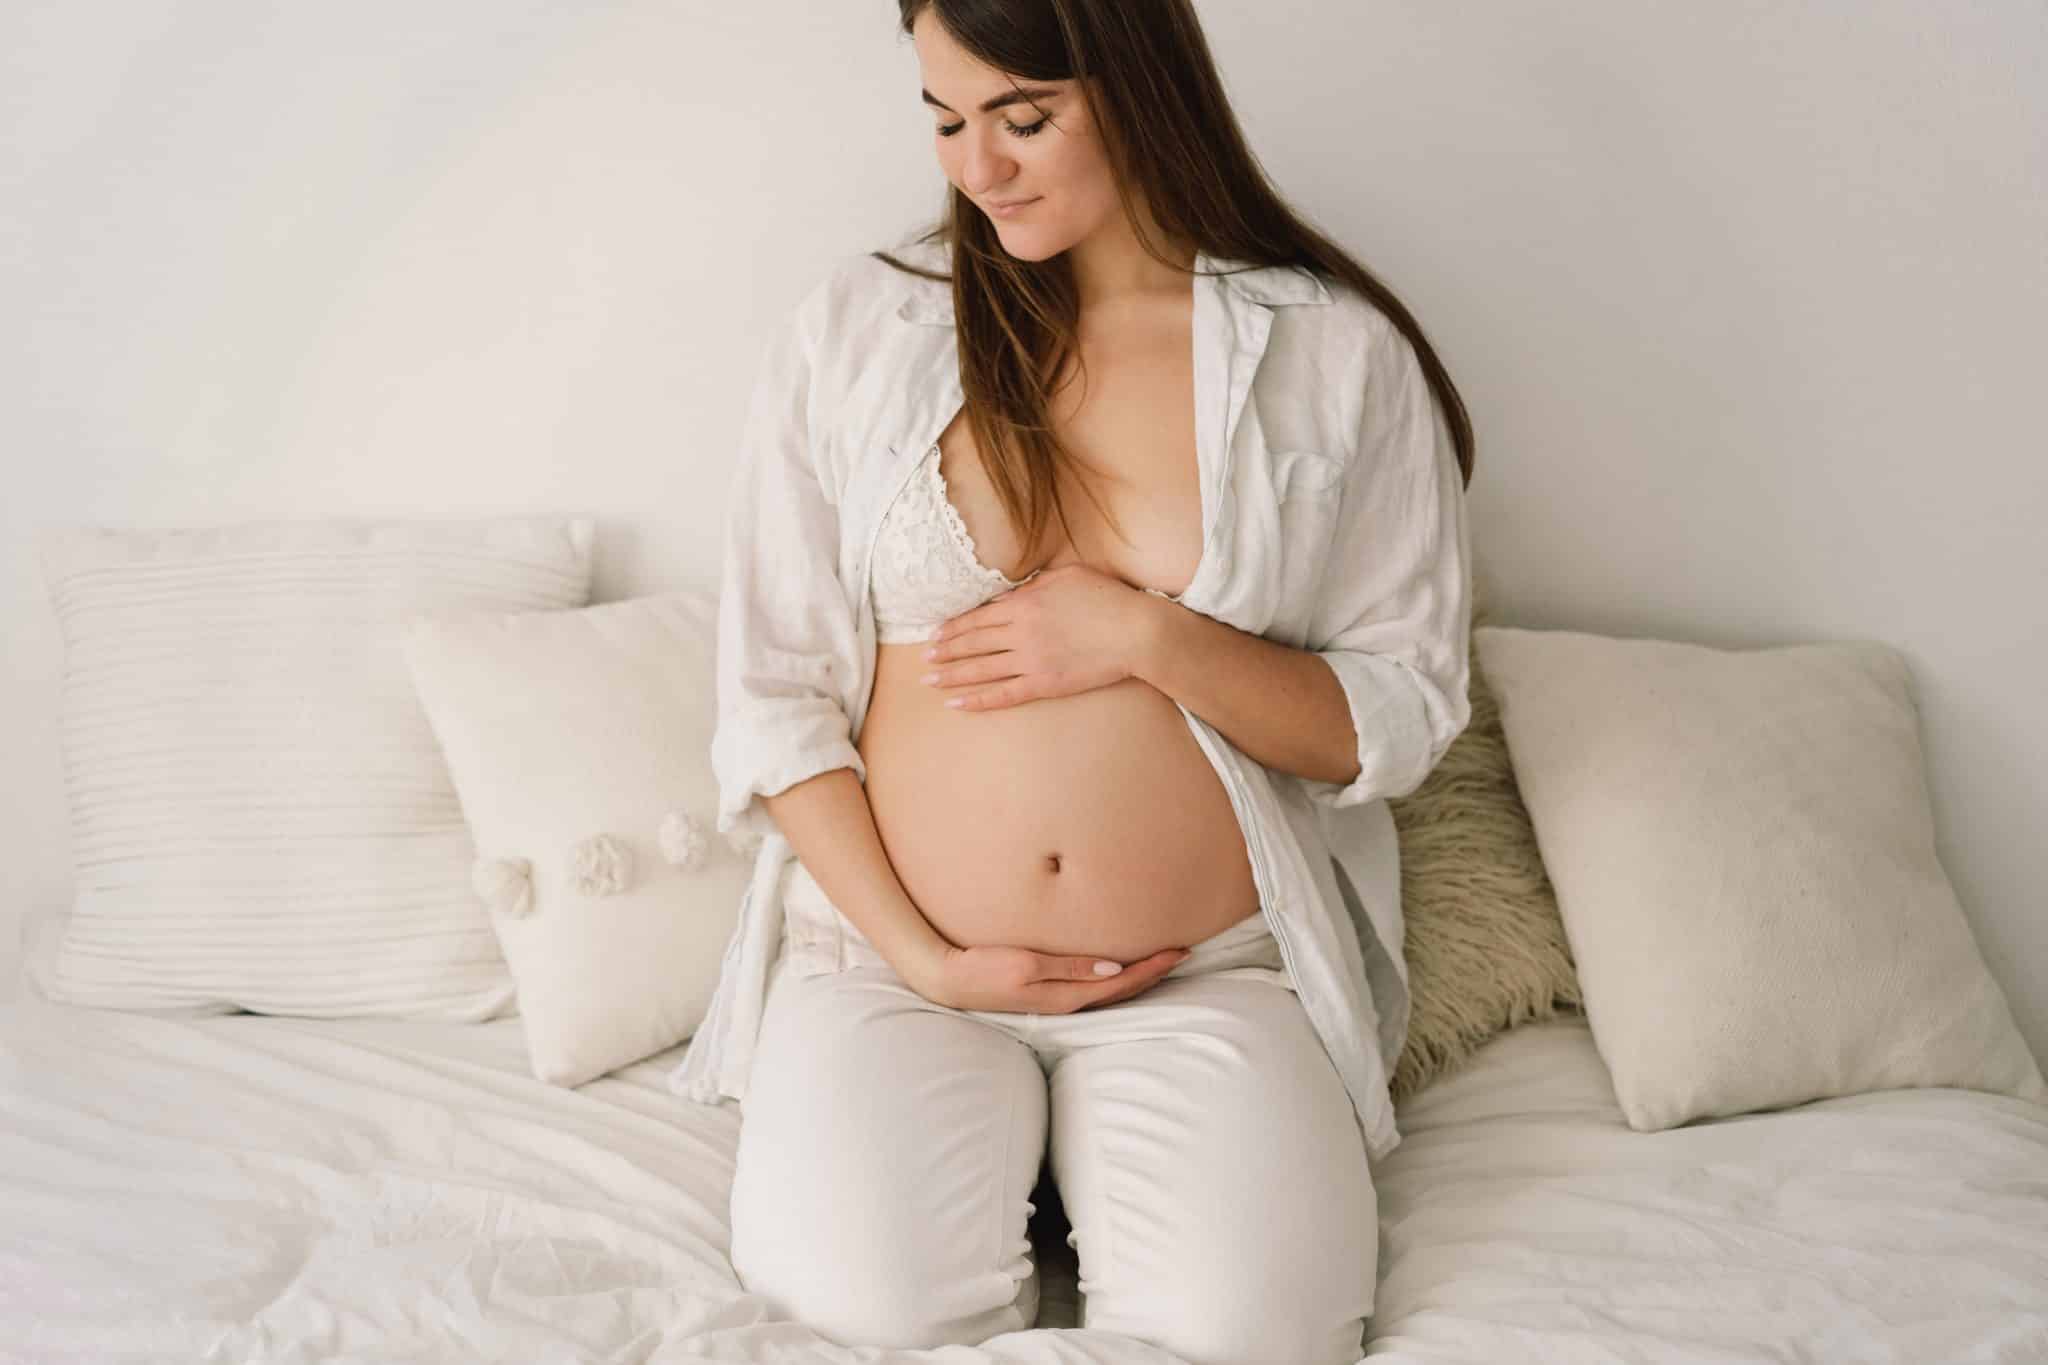 Femme enceinte et vergeture : pourquoi utiliser des soins naturels ?